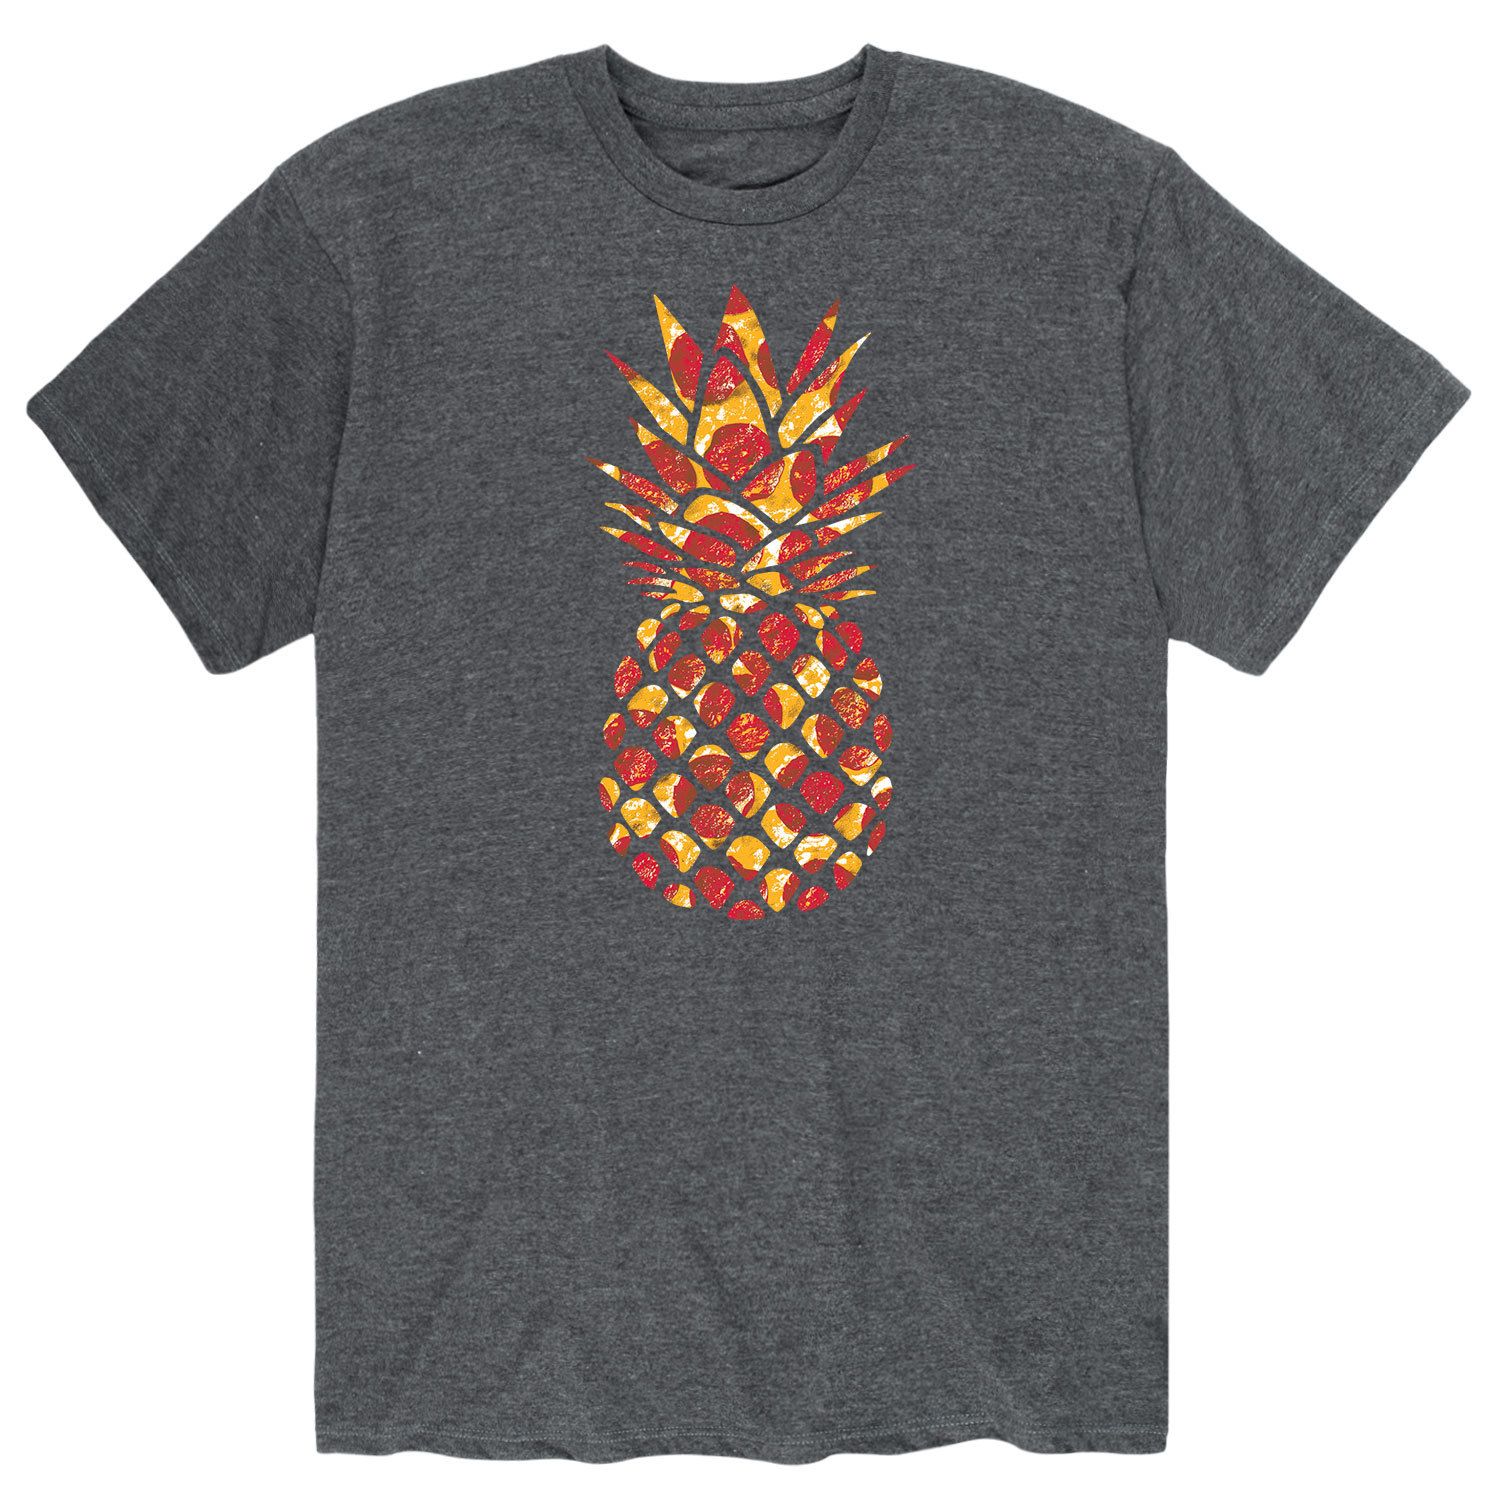 Мужская футболка Pepperoni с ананасом Licensed Character